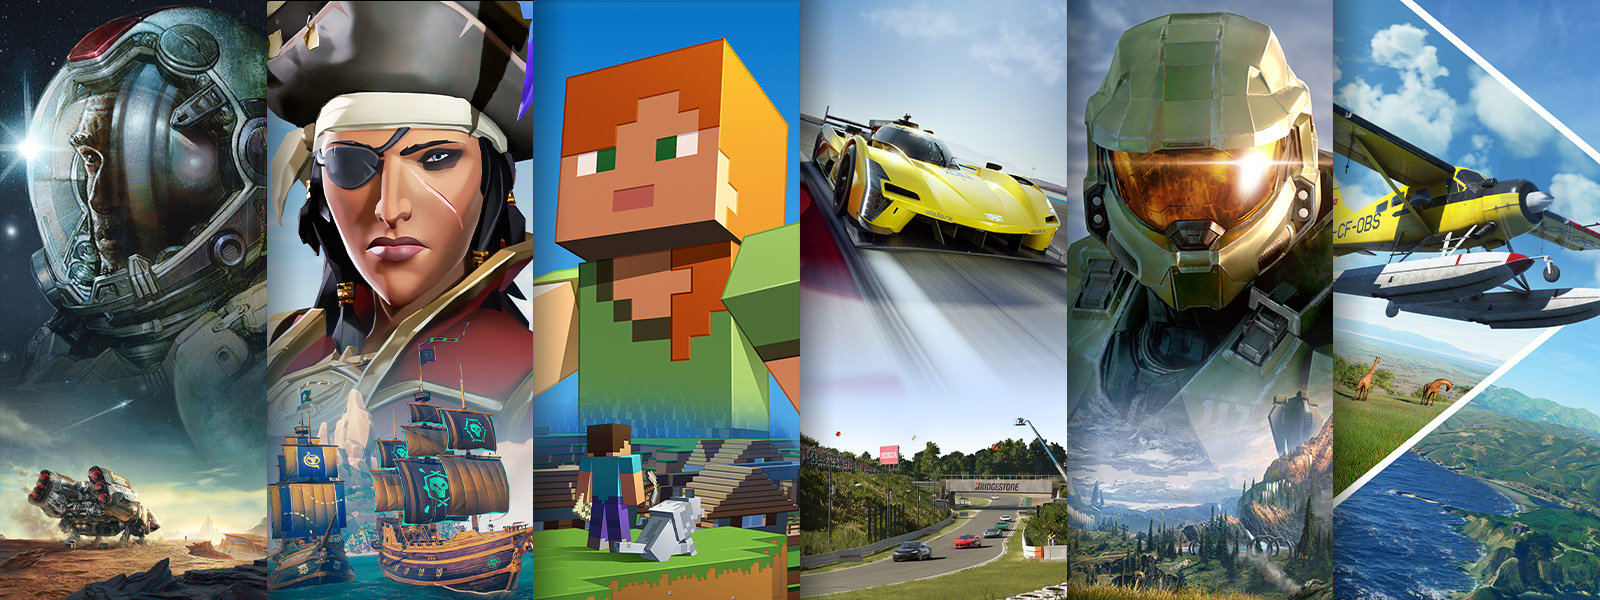 Quatre scènes de quatre jeux vidéo différents disponibles avec l’abonnement Xbox Game Pass